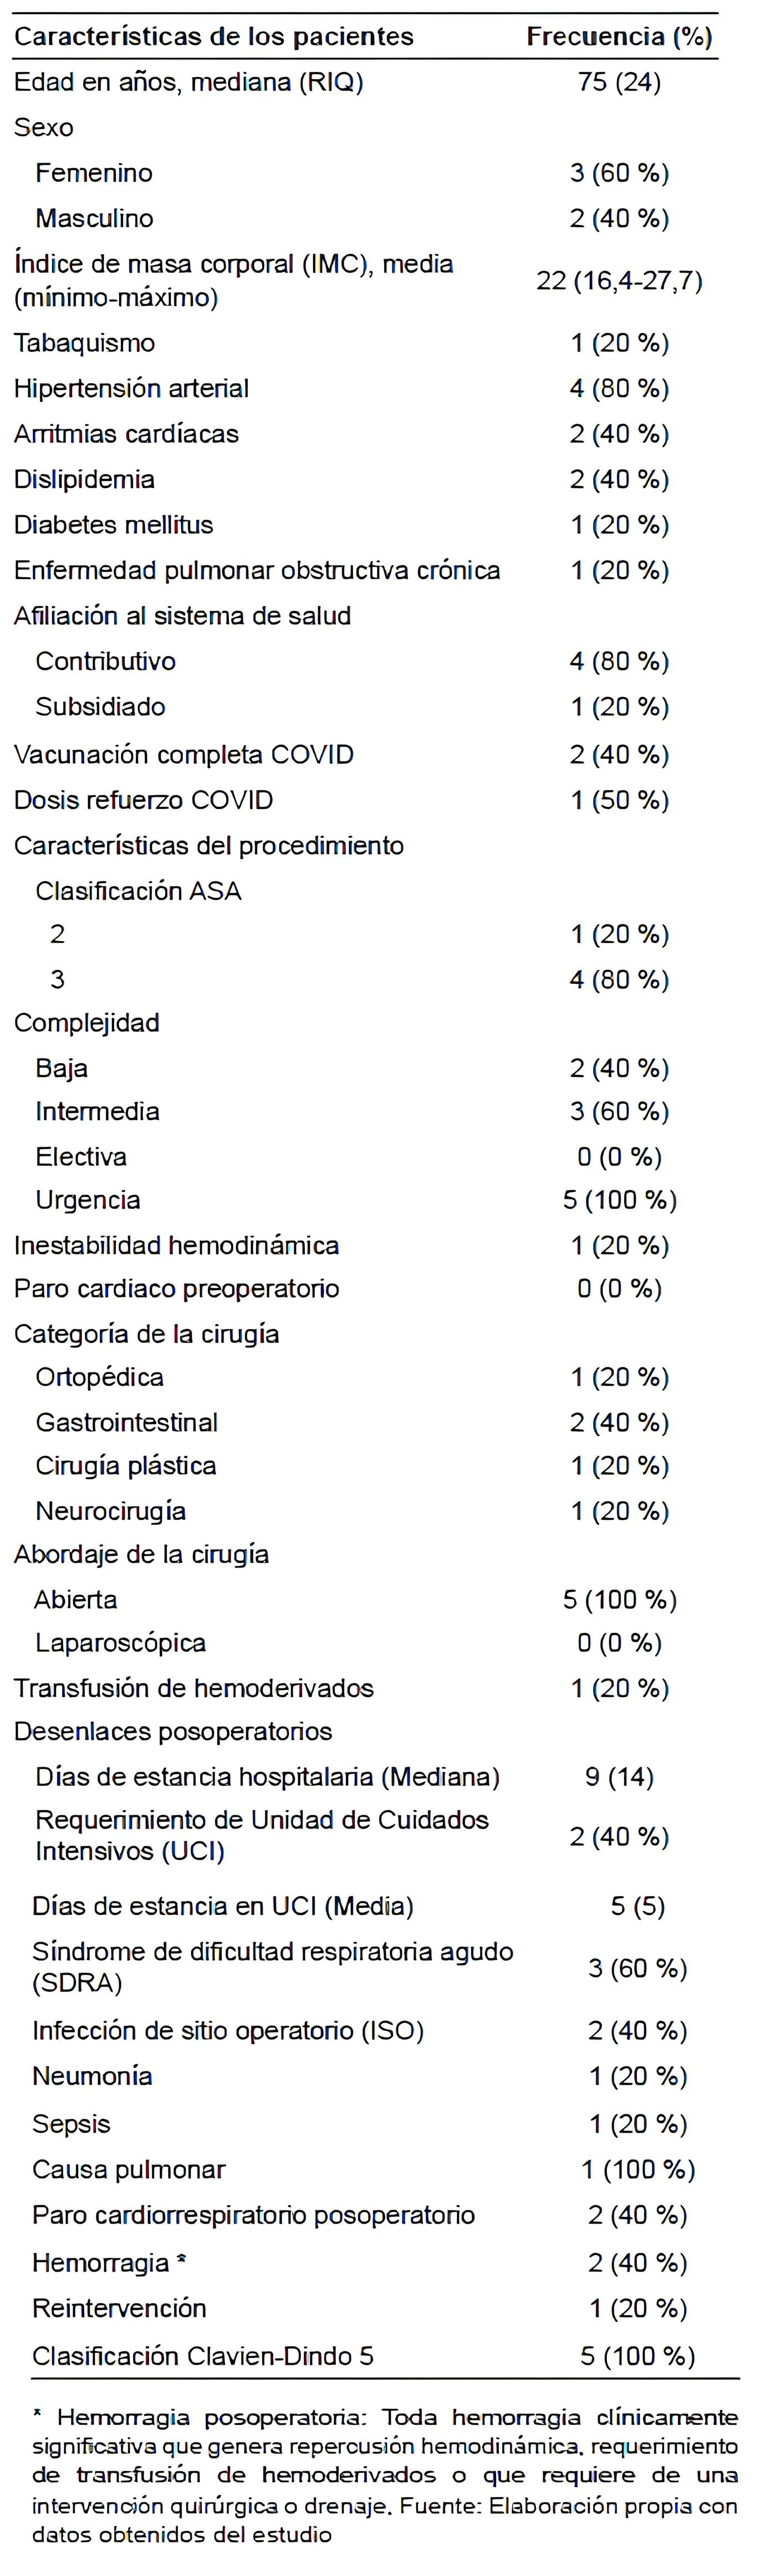 Características de los pacientes con mortalidad perioperatoria